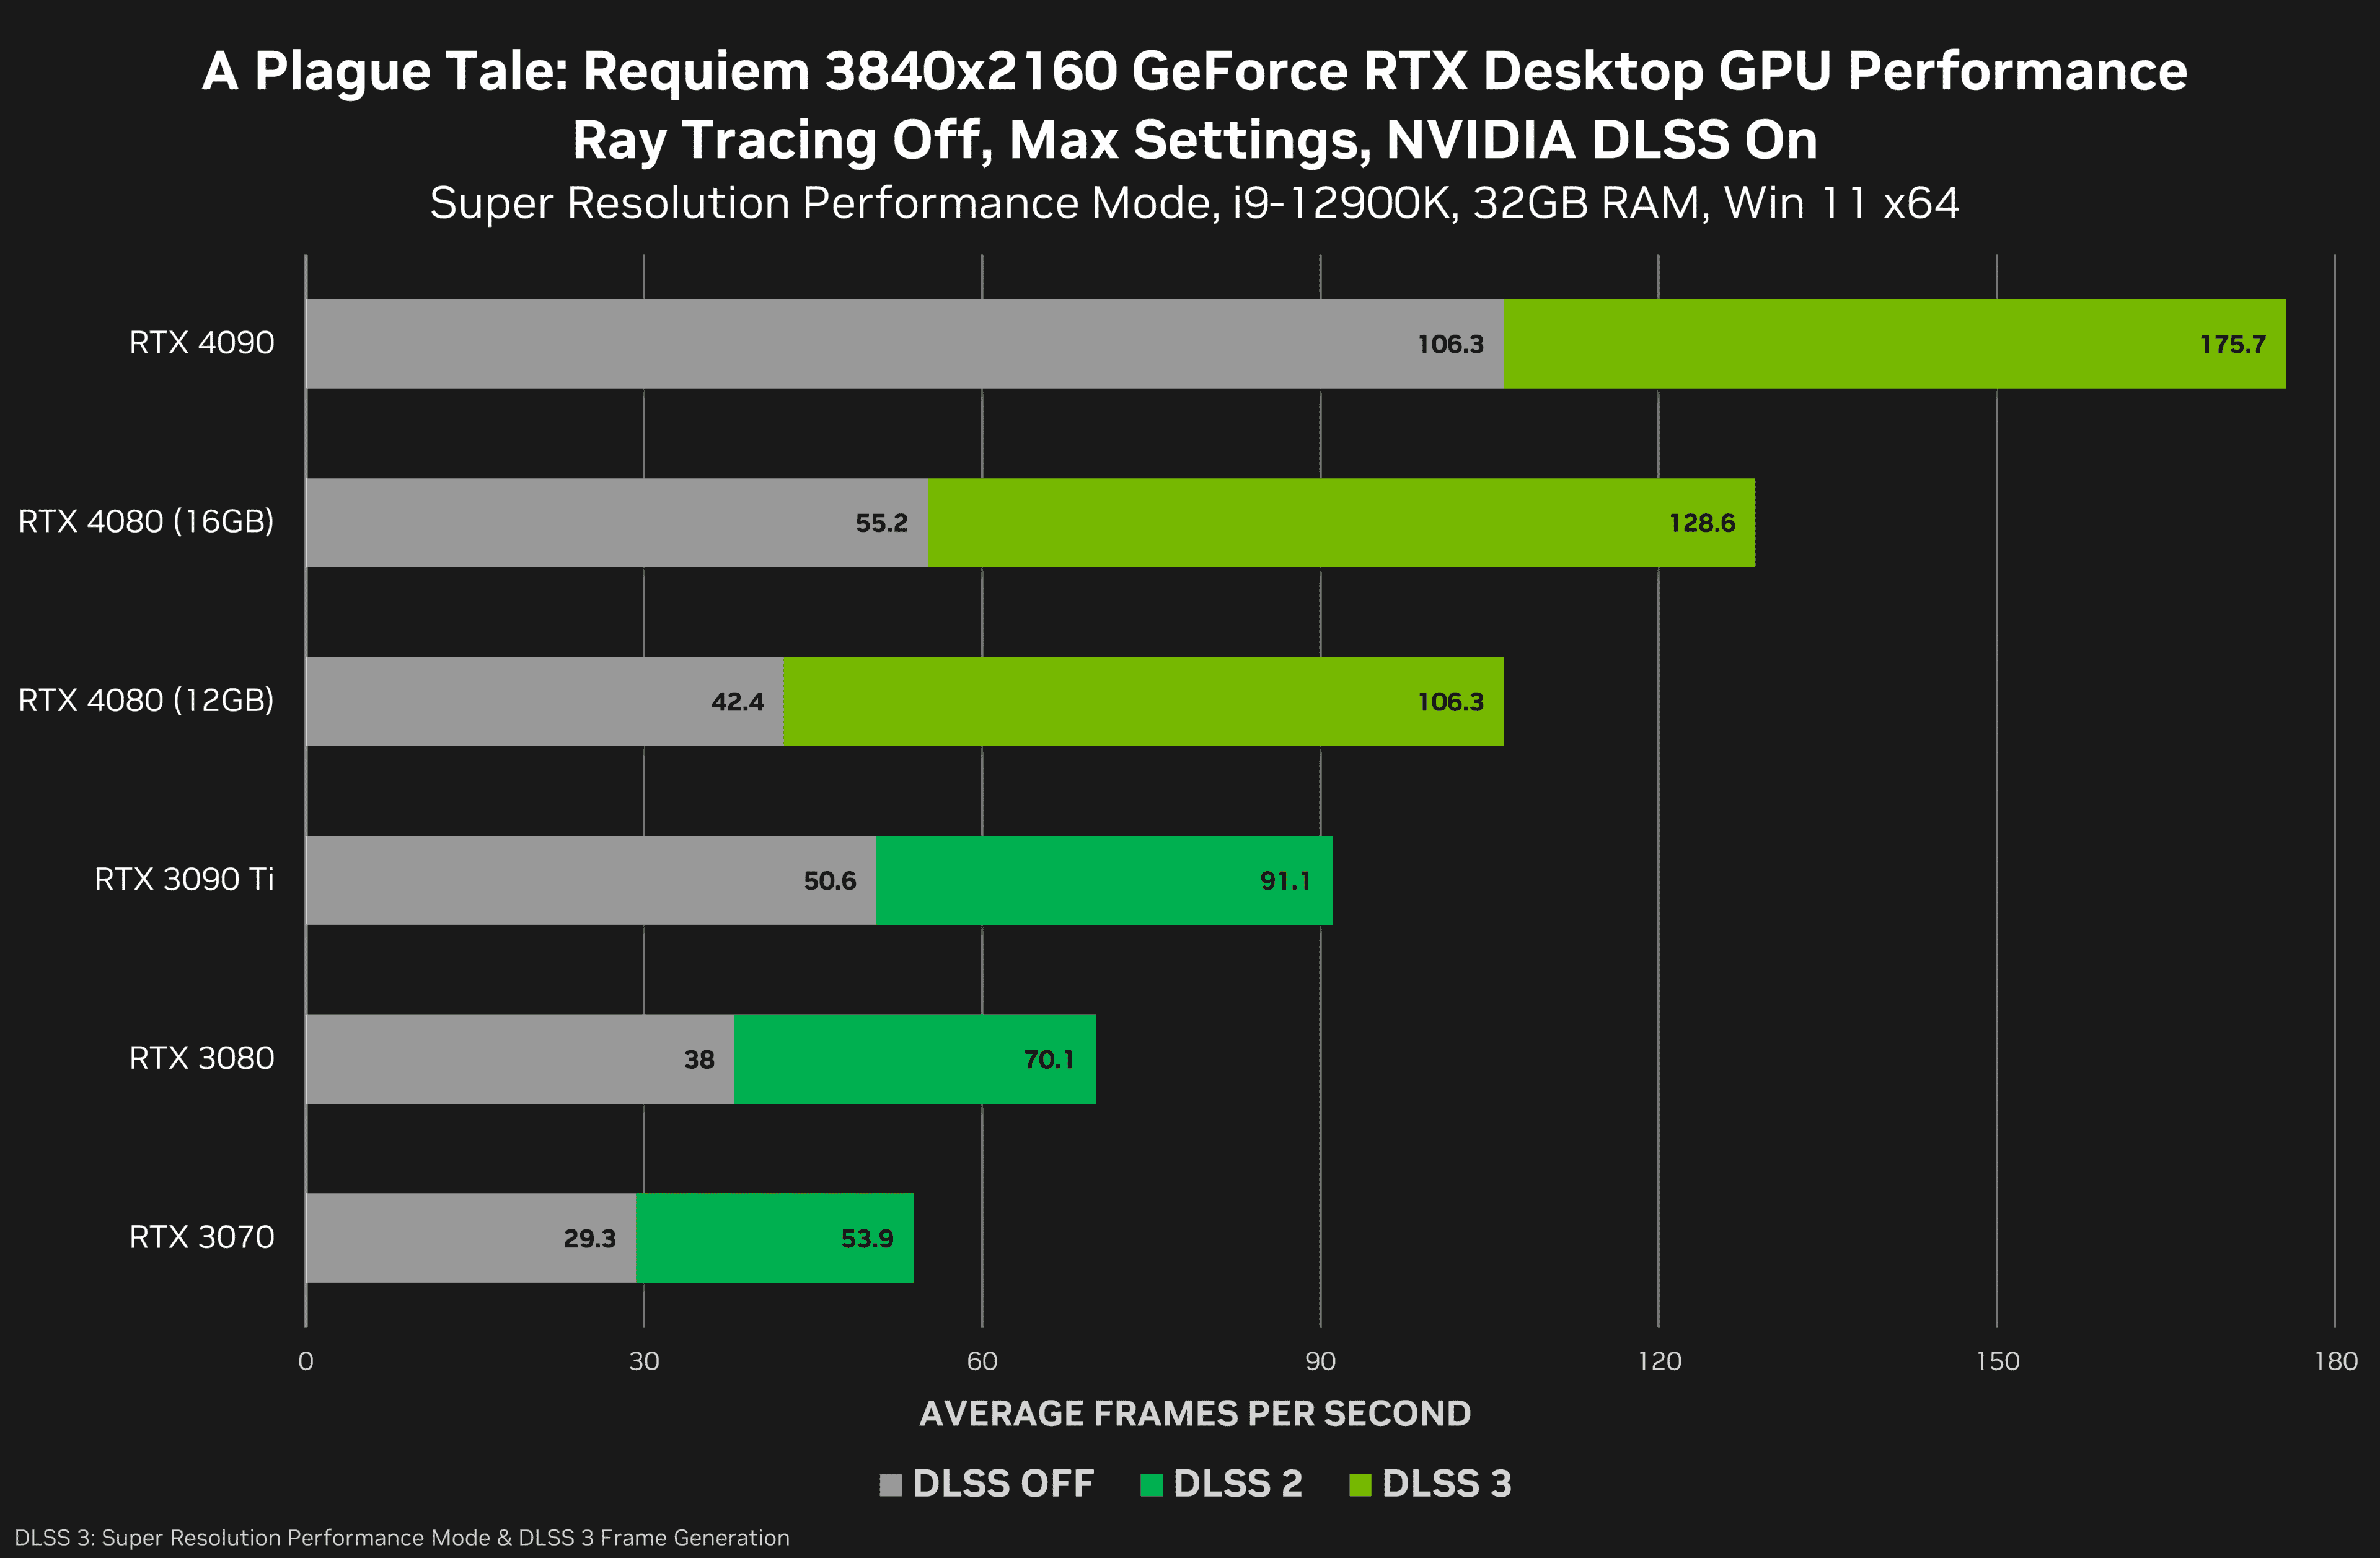 NVIDIA comparte benchmark oficial de las GPU RTX 4080 de 16GB y RTX 4080 de 12GB